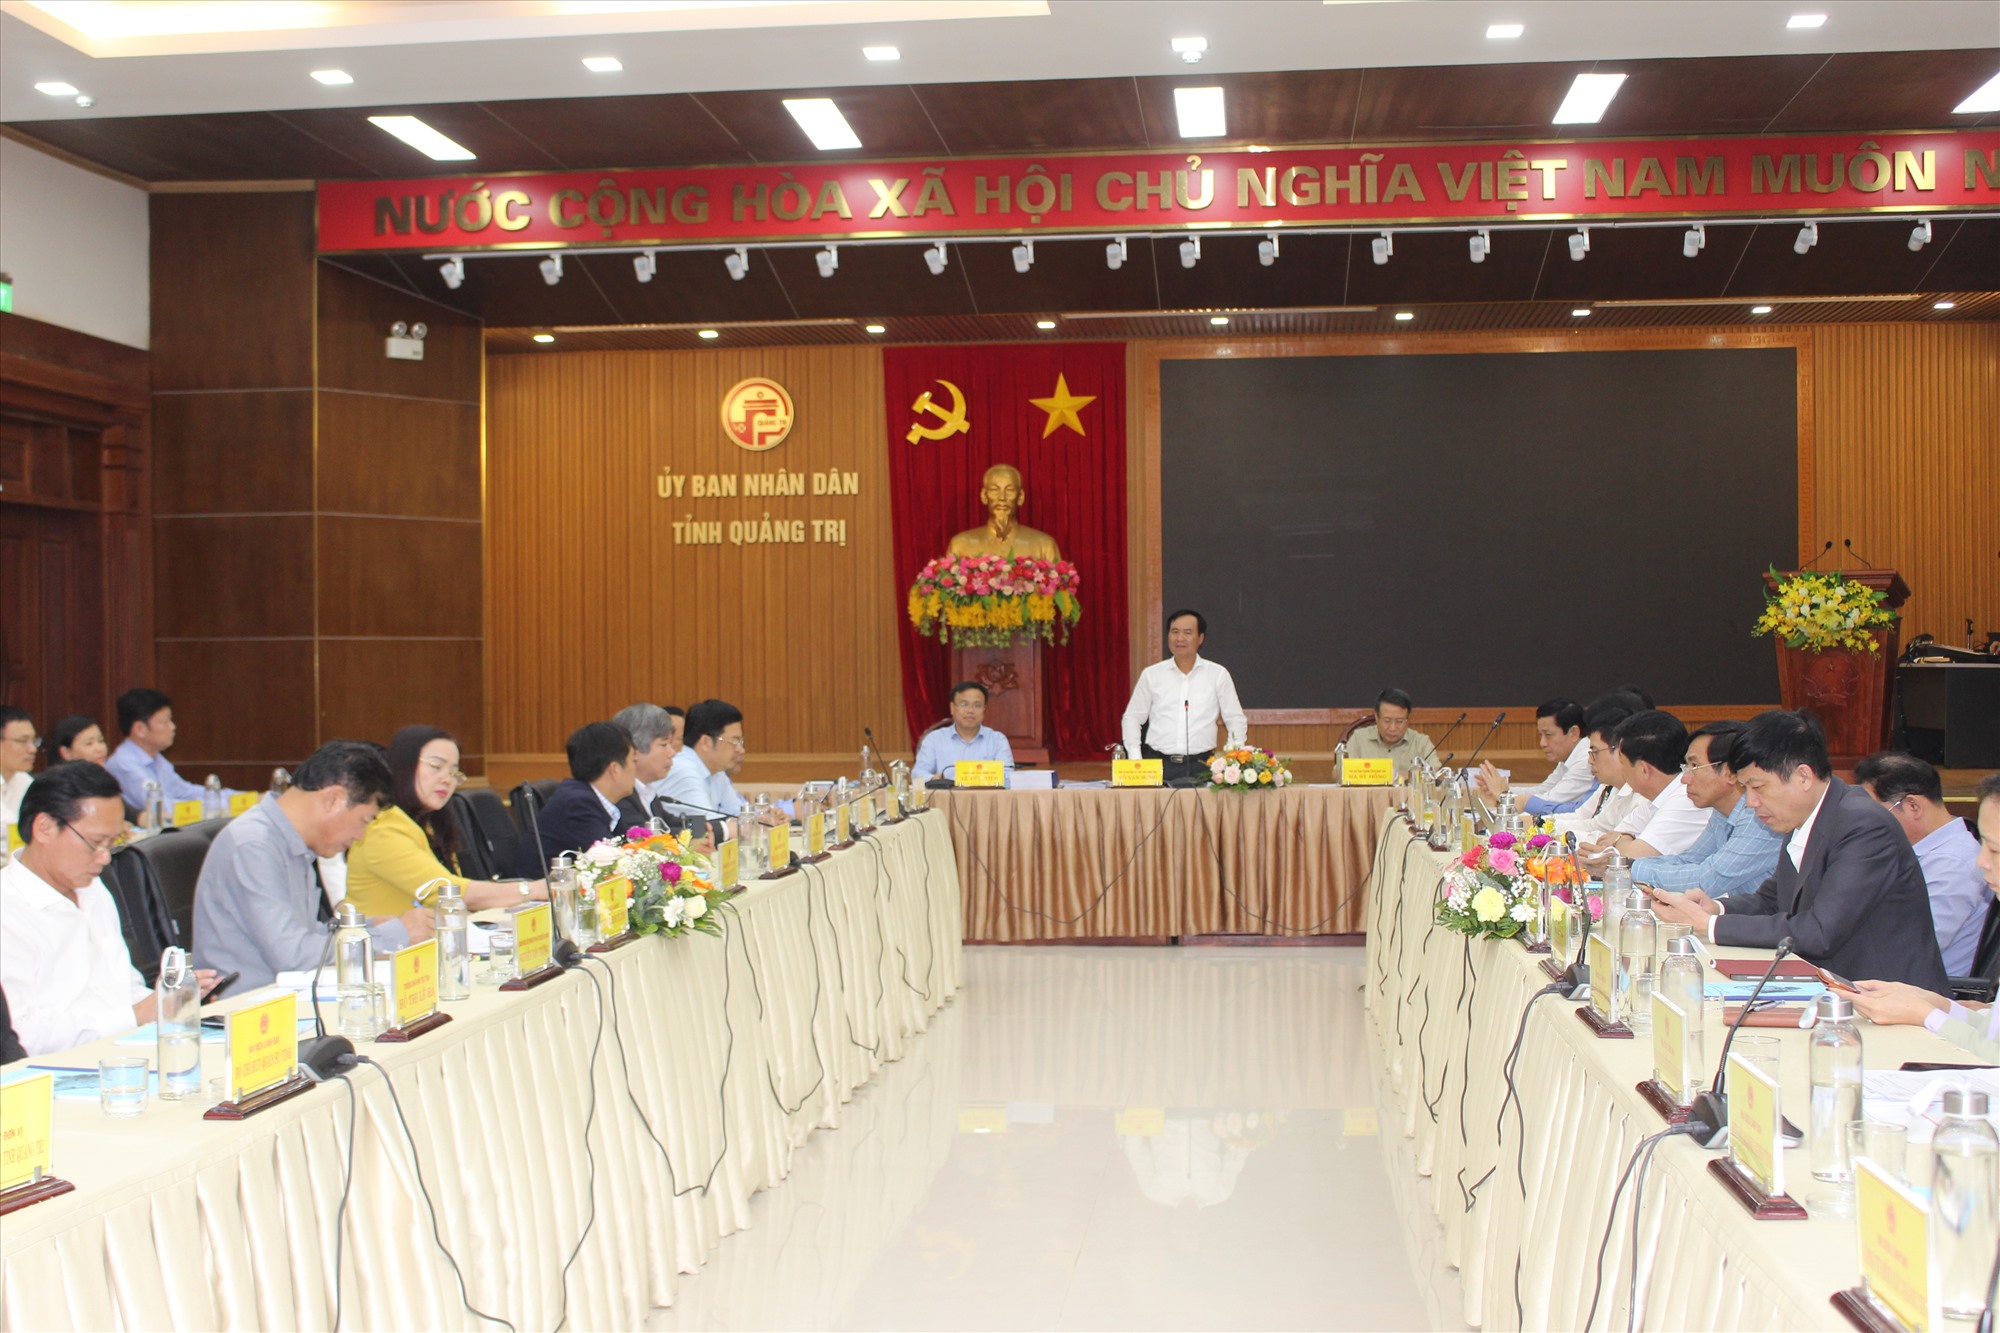 Chủ tịch UBND tỉnh Võ Văn Hưng yêu cầu Sở Kế hoạch và Đầu tư phối hợp đơn vị tư vấn tiếp thu góp ý và hoàn chỉnh báo cáo để trình BTV Tỉnh ủy trước ngày 10/2/2023 - Ảnh: T.T